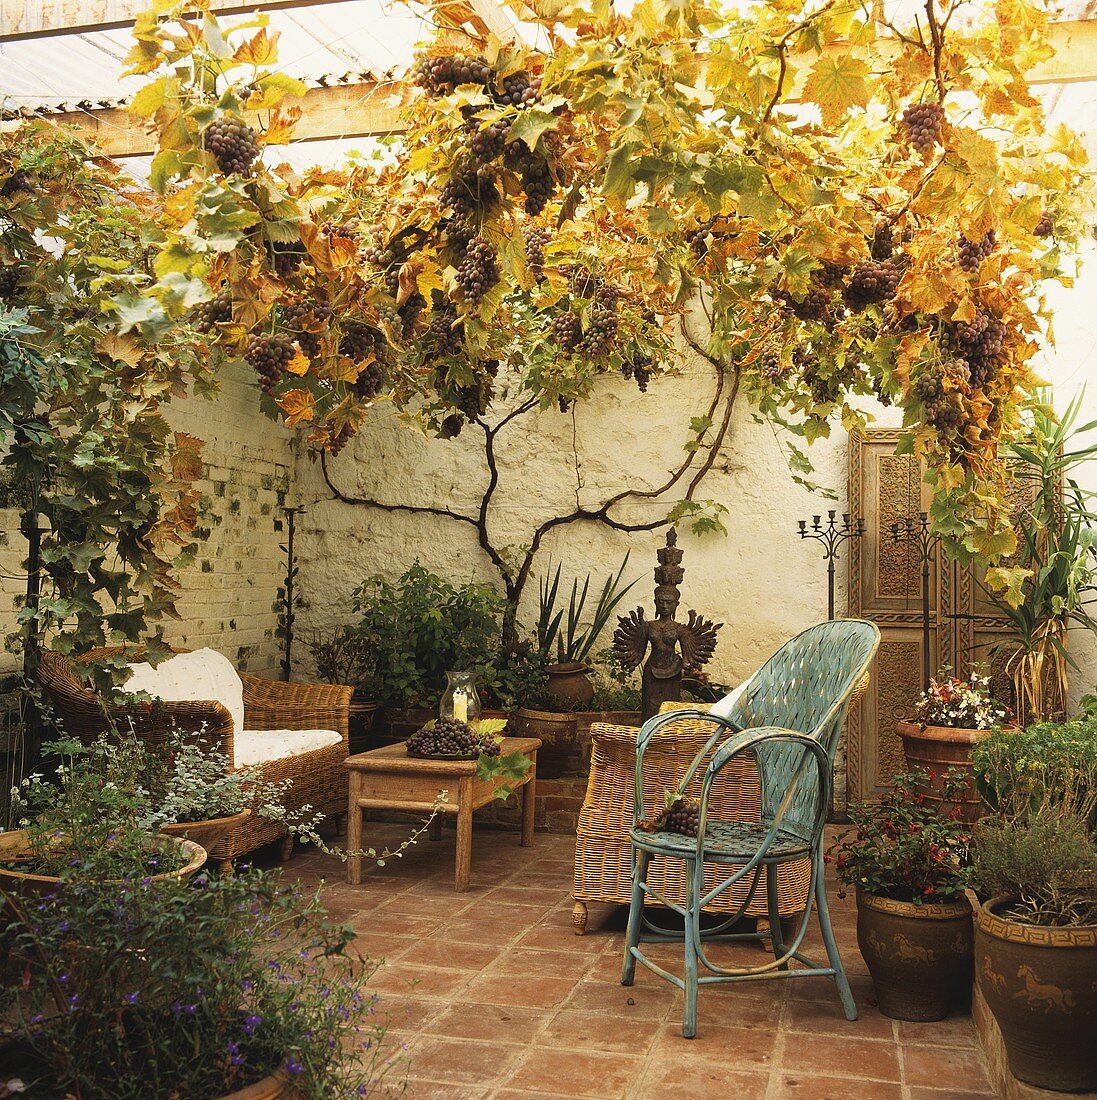 Überdachte Terrasse mit wachsenden Weintrauben und Metallstuhl neben Korbsesseln